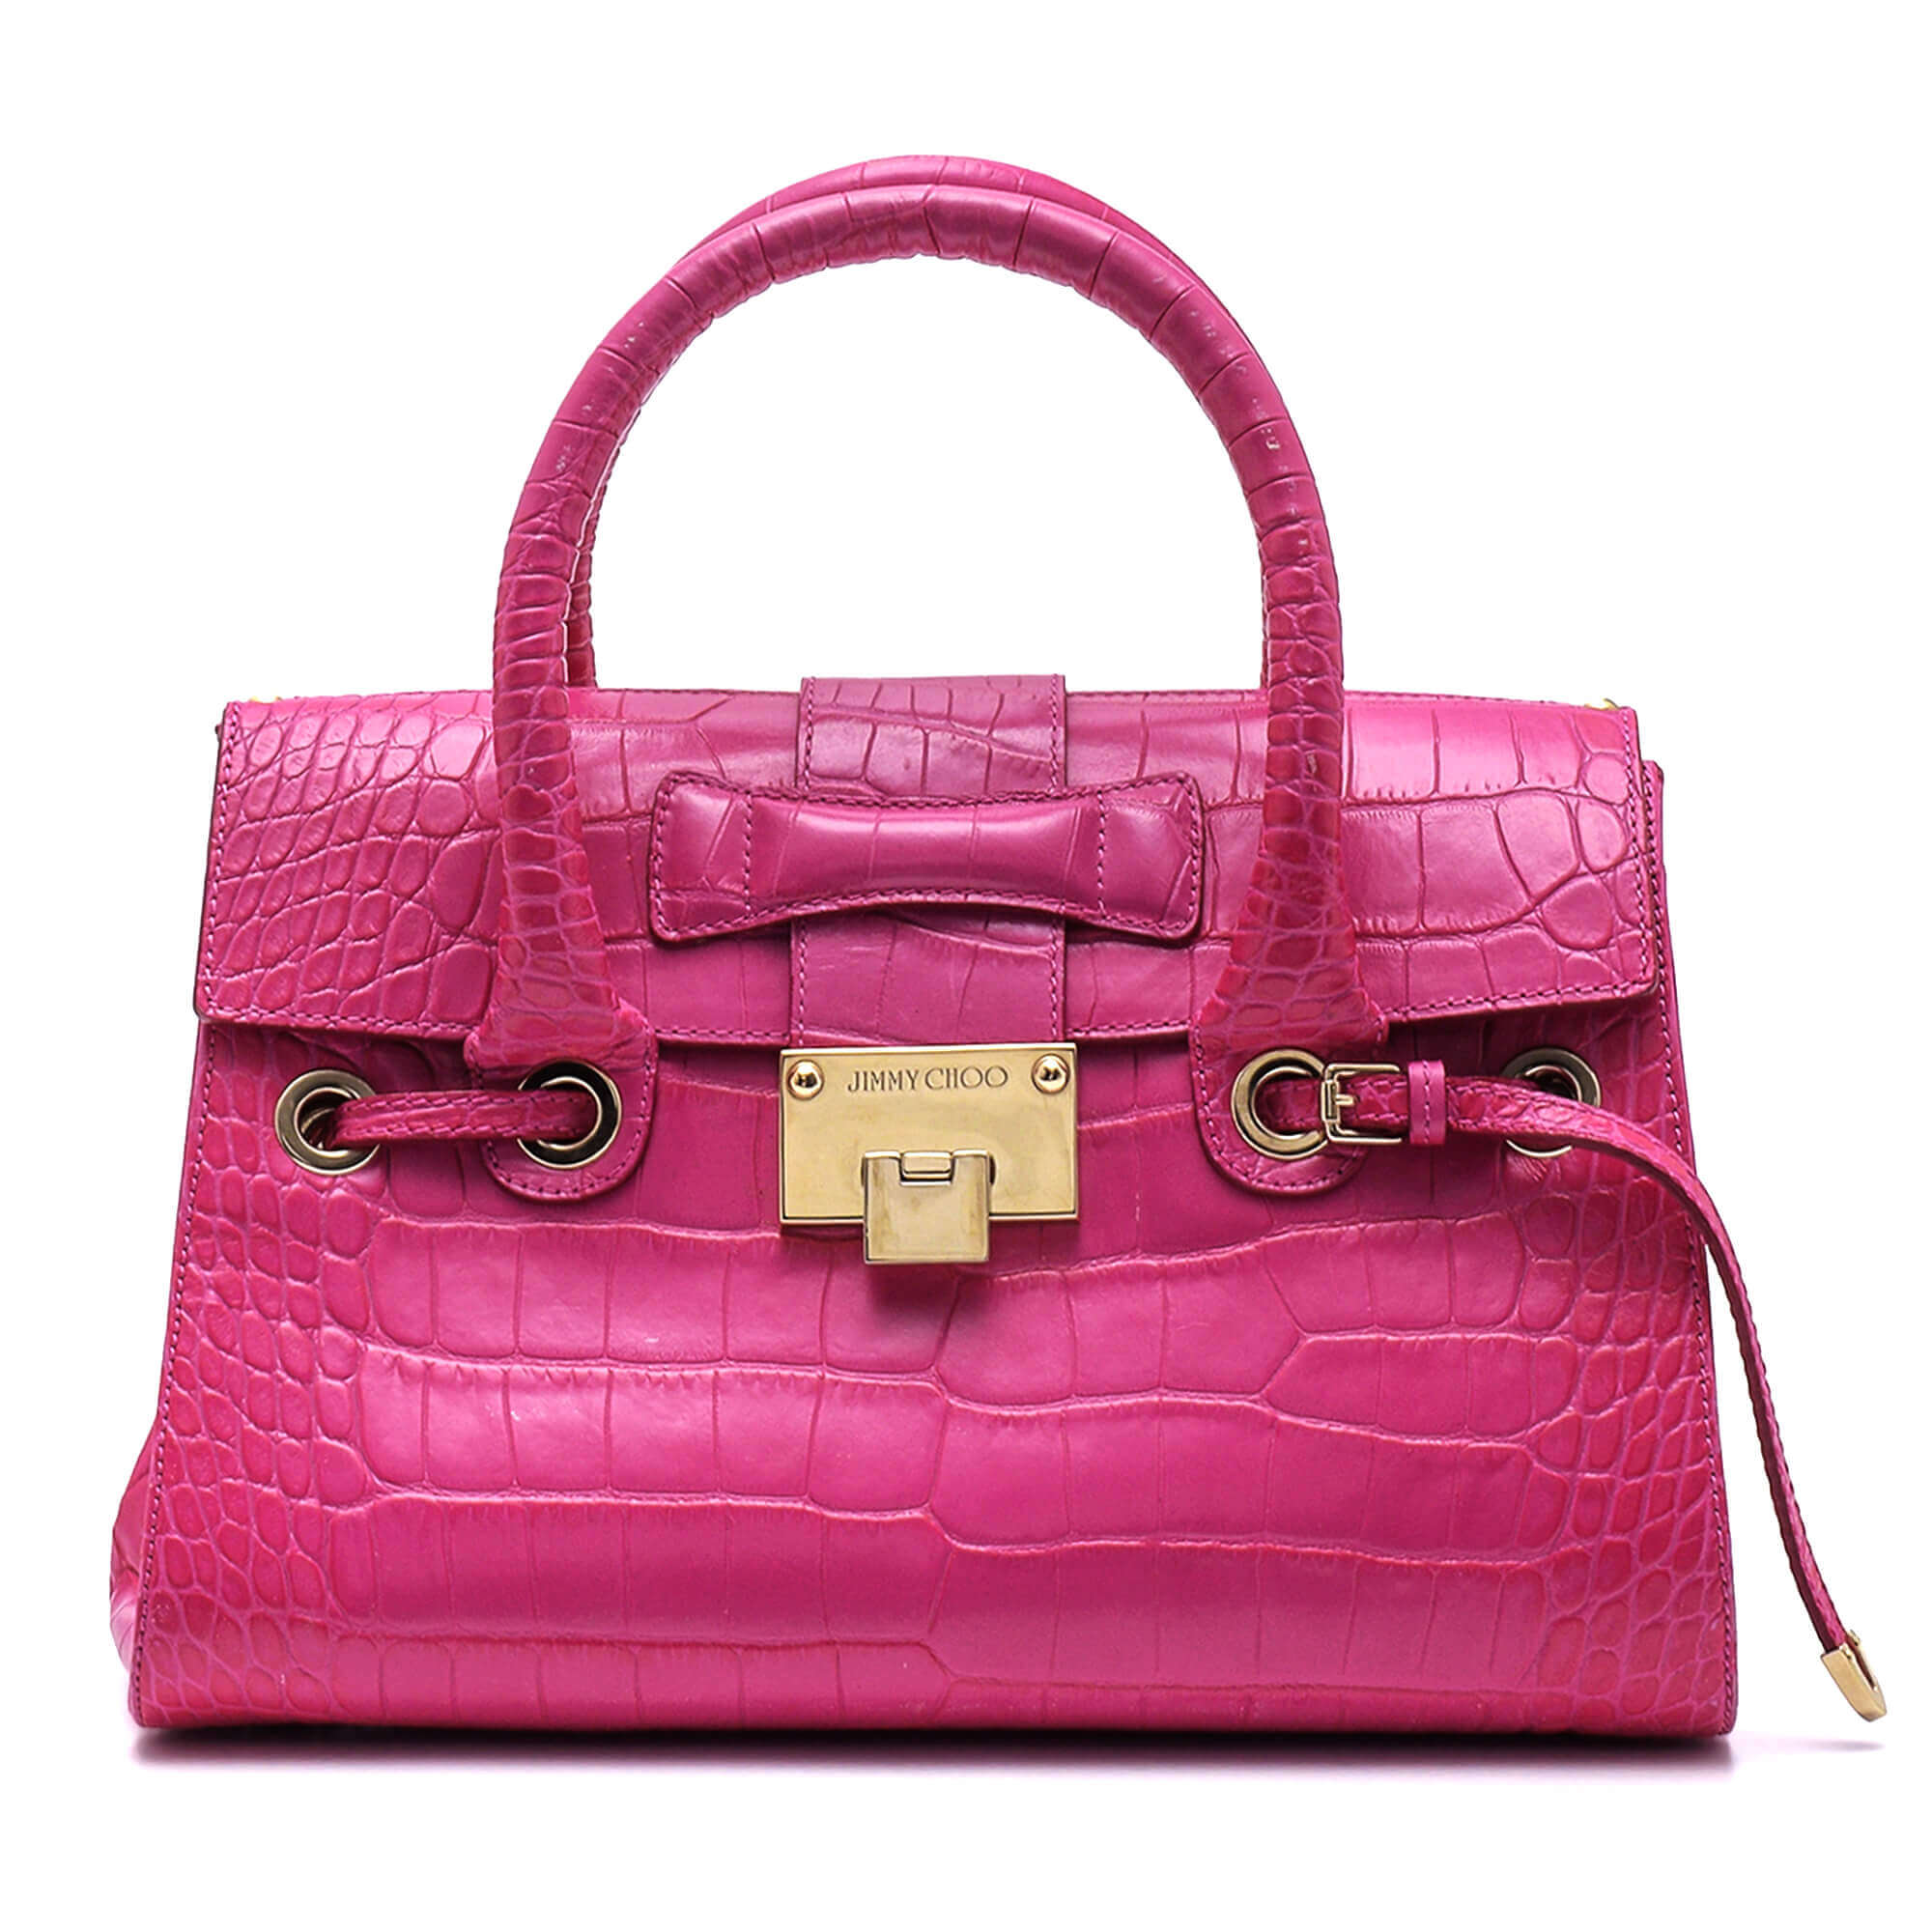 Jimmy Choo - Pink Leather Crocodile Embossed Rosalie Top Handle Bag